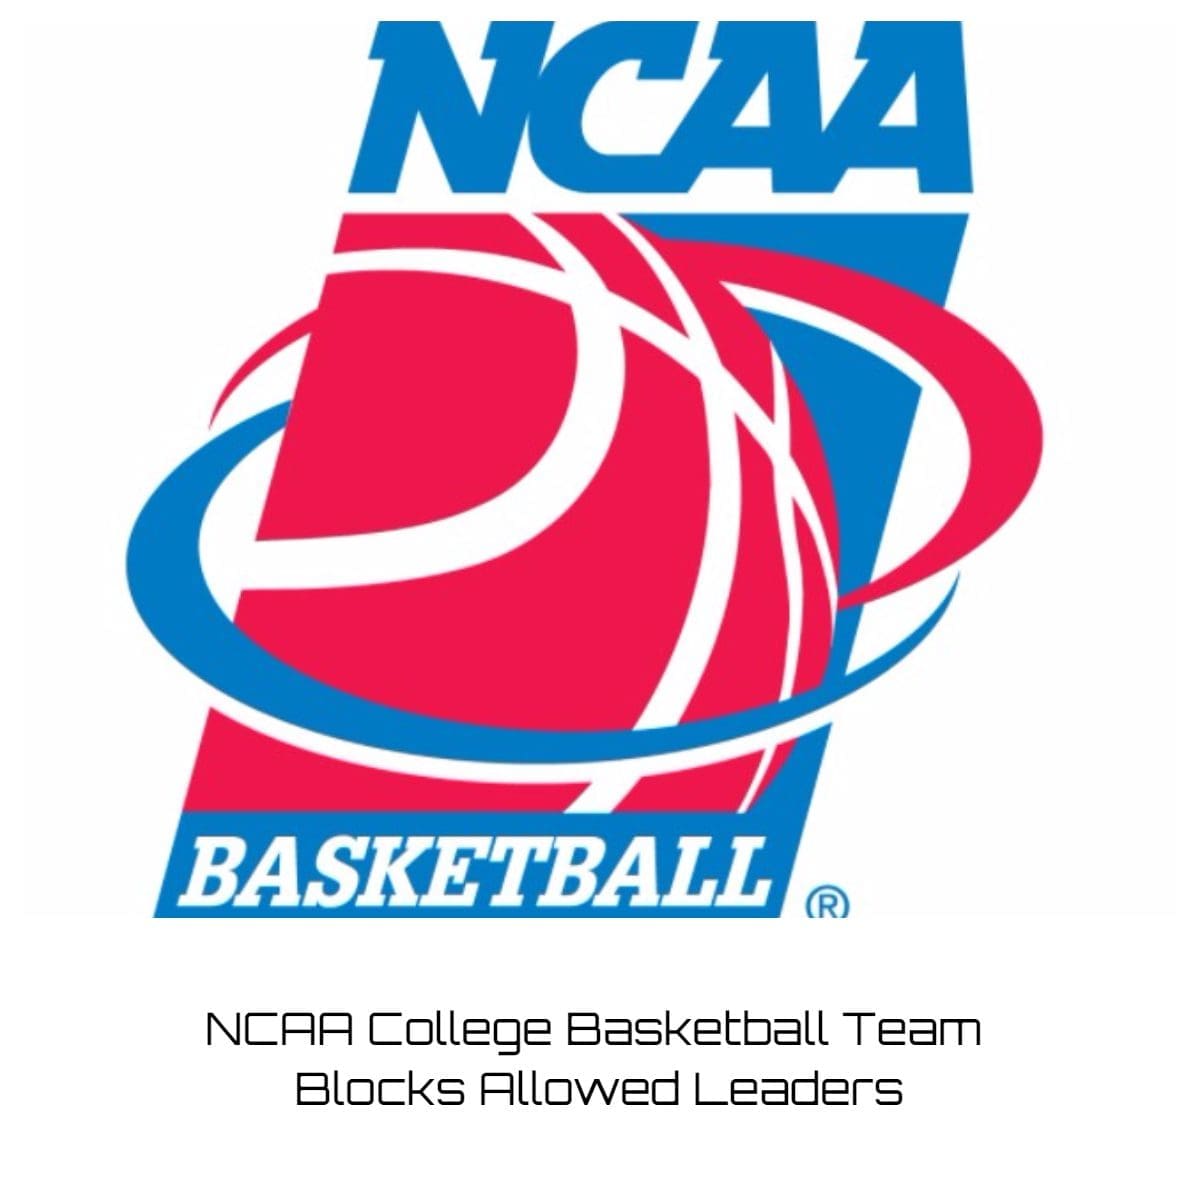 NCAA College Basketball Team Blocks Allowed Leaders